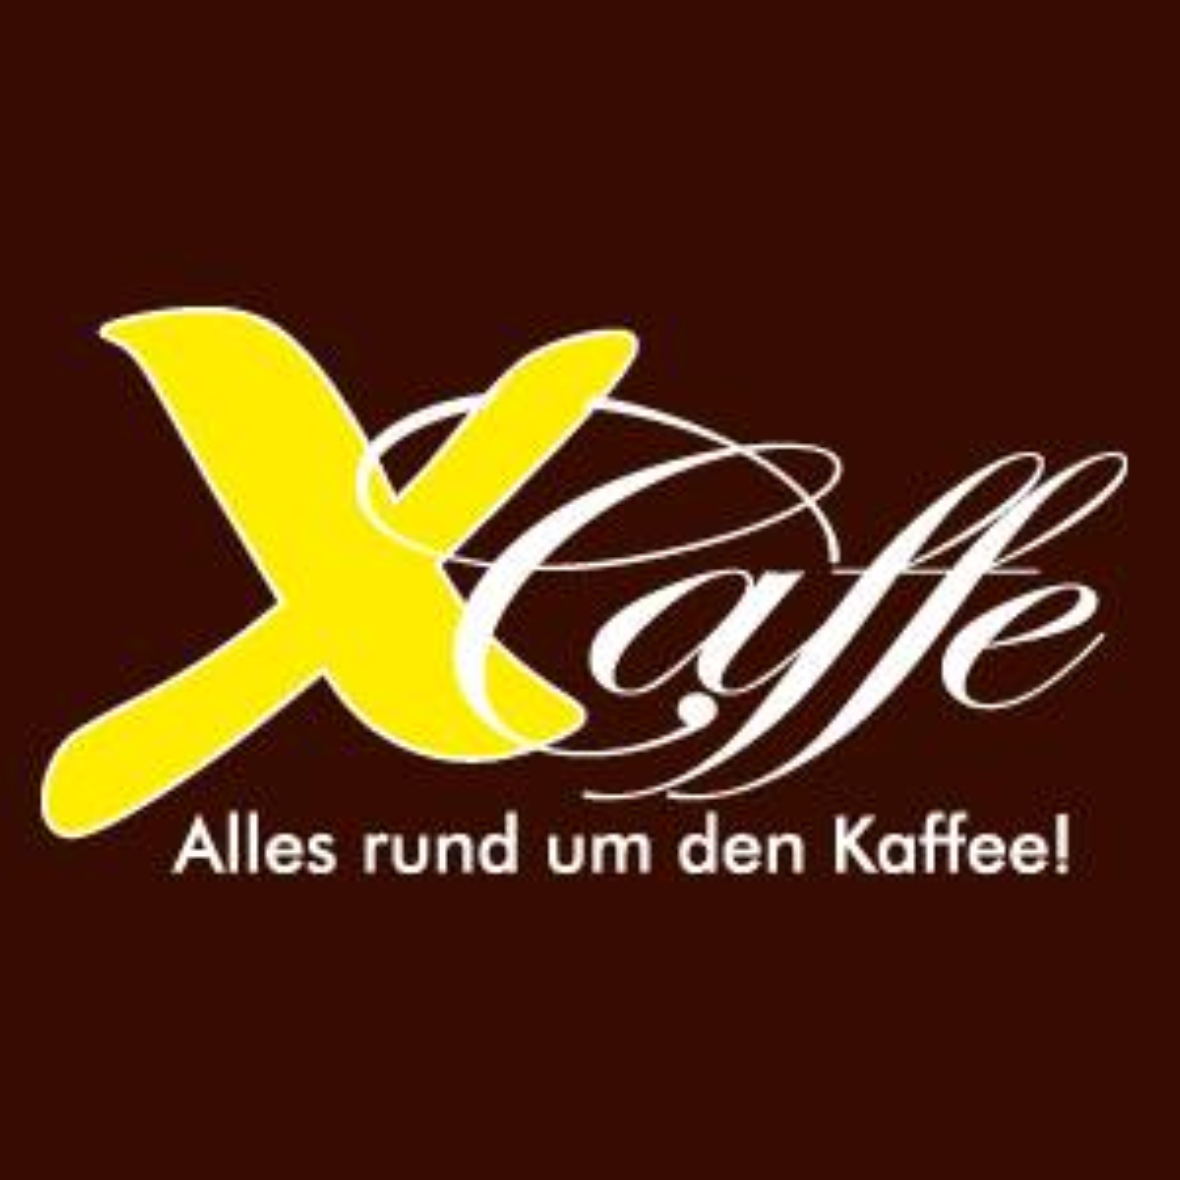 X-Caffe